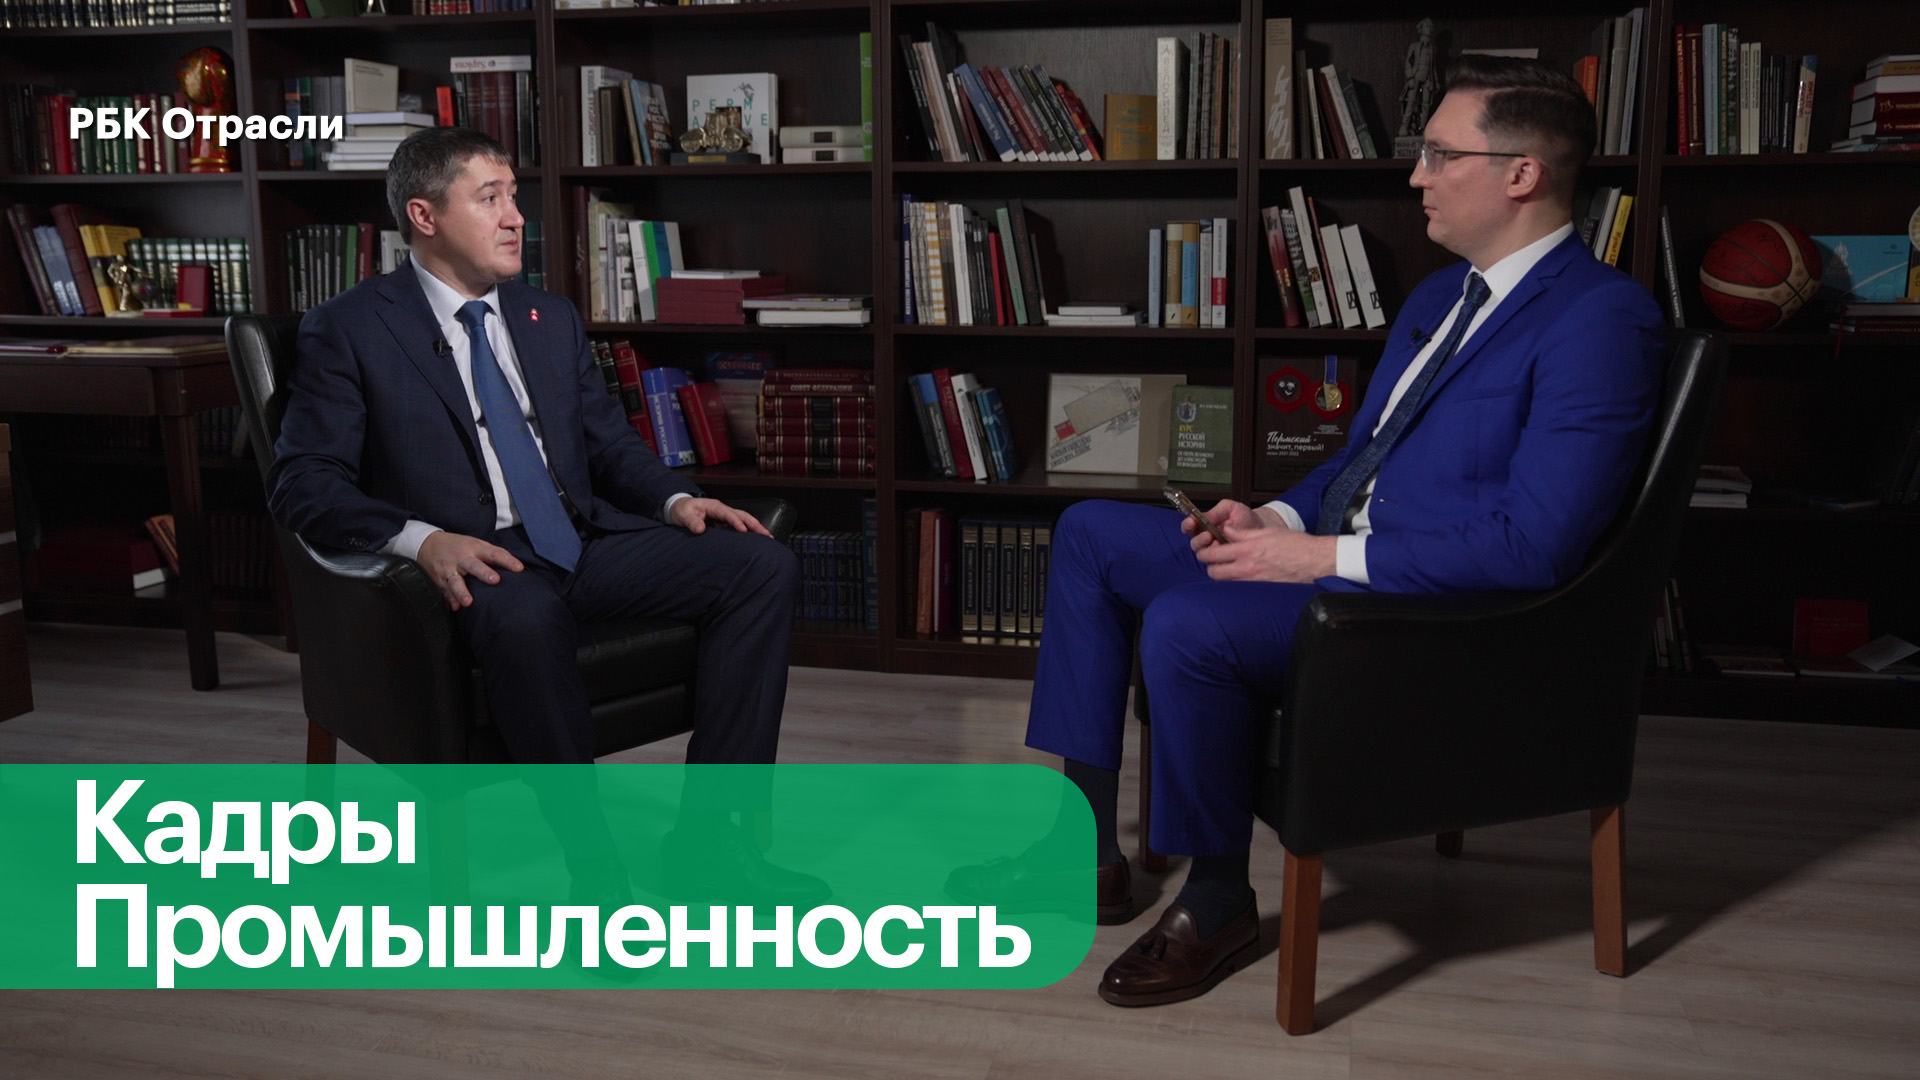 Интервью с губернатором Пермского края